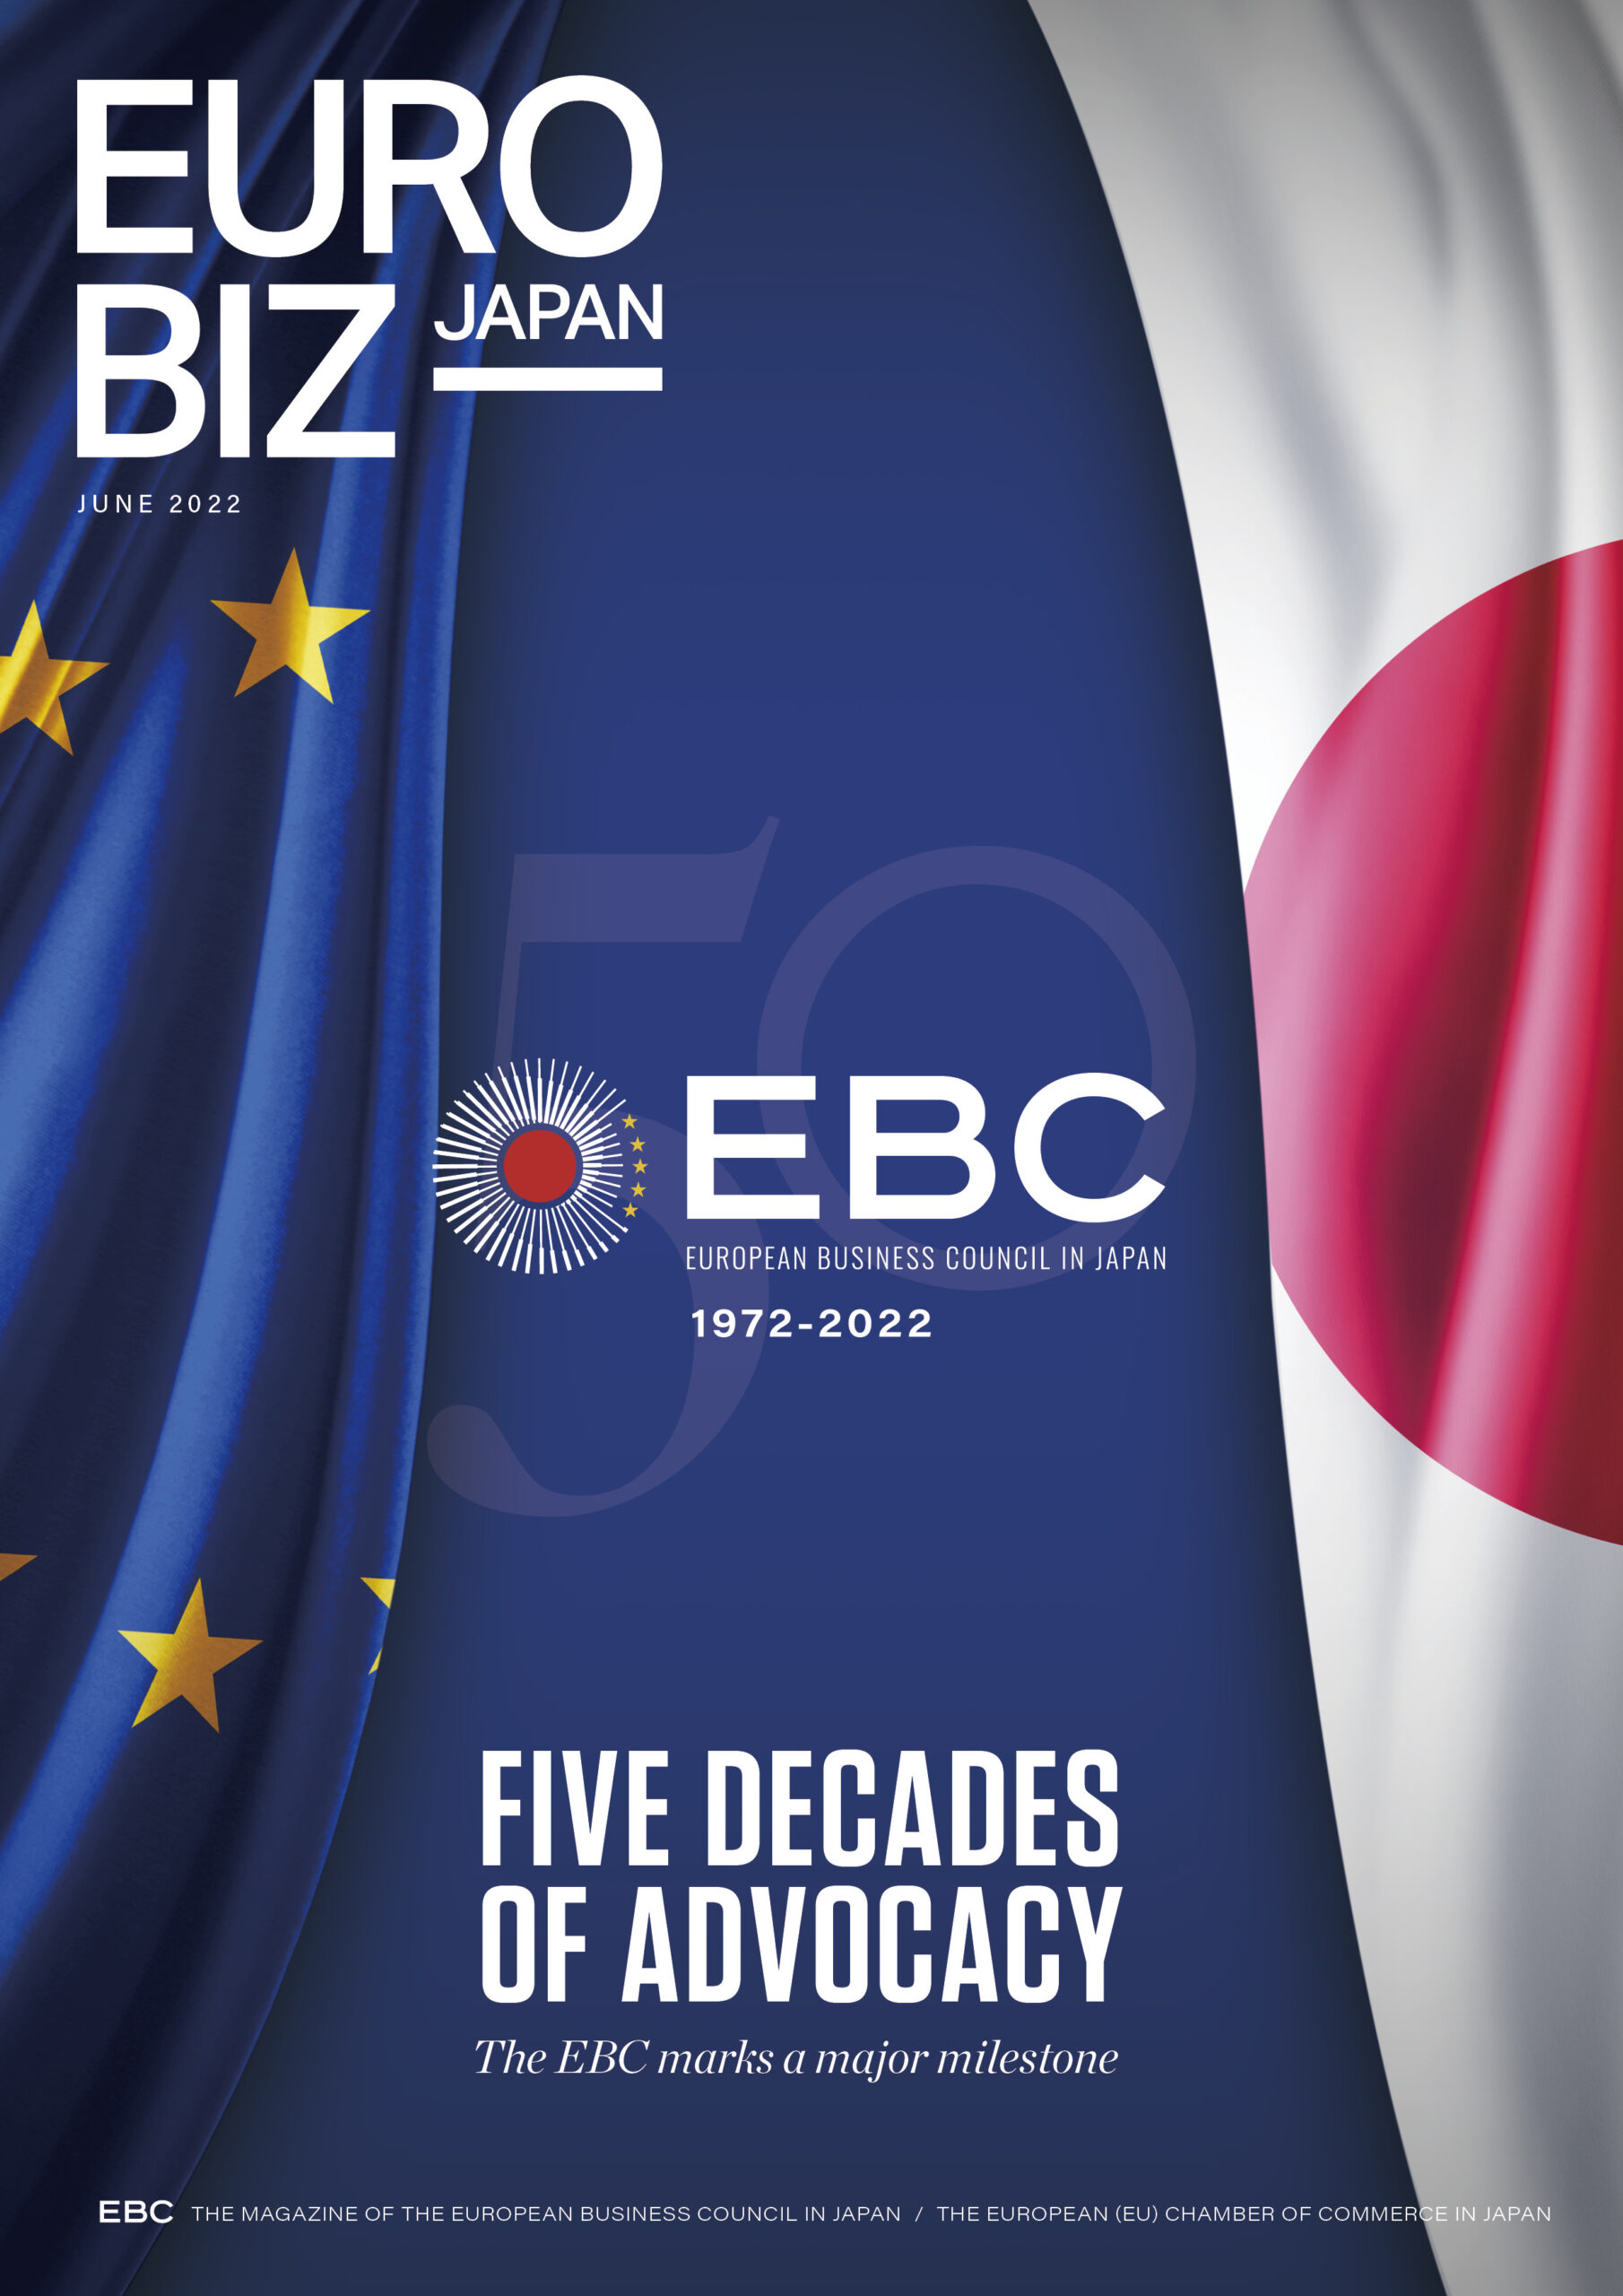 Eurobiz Japan